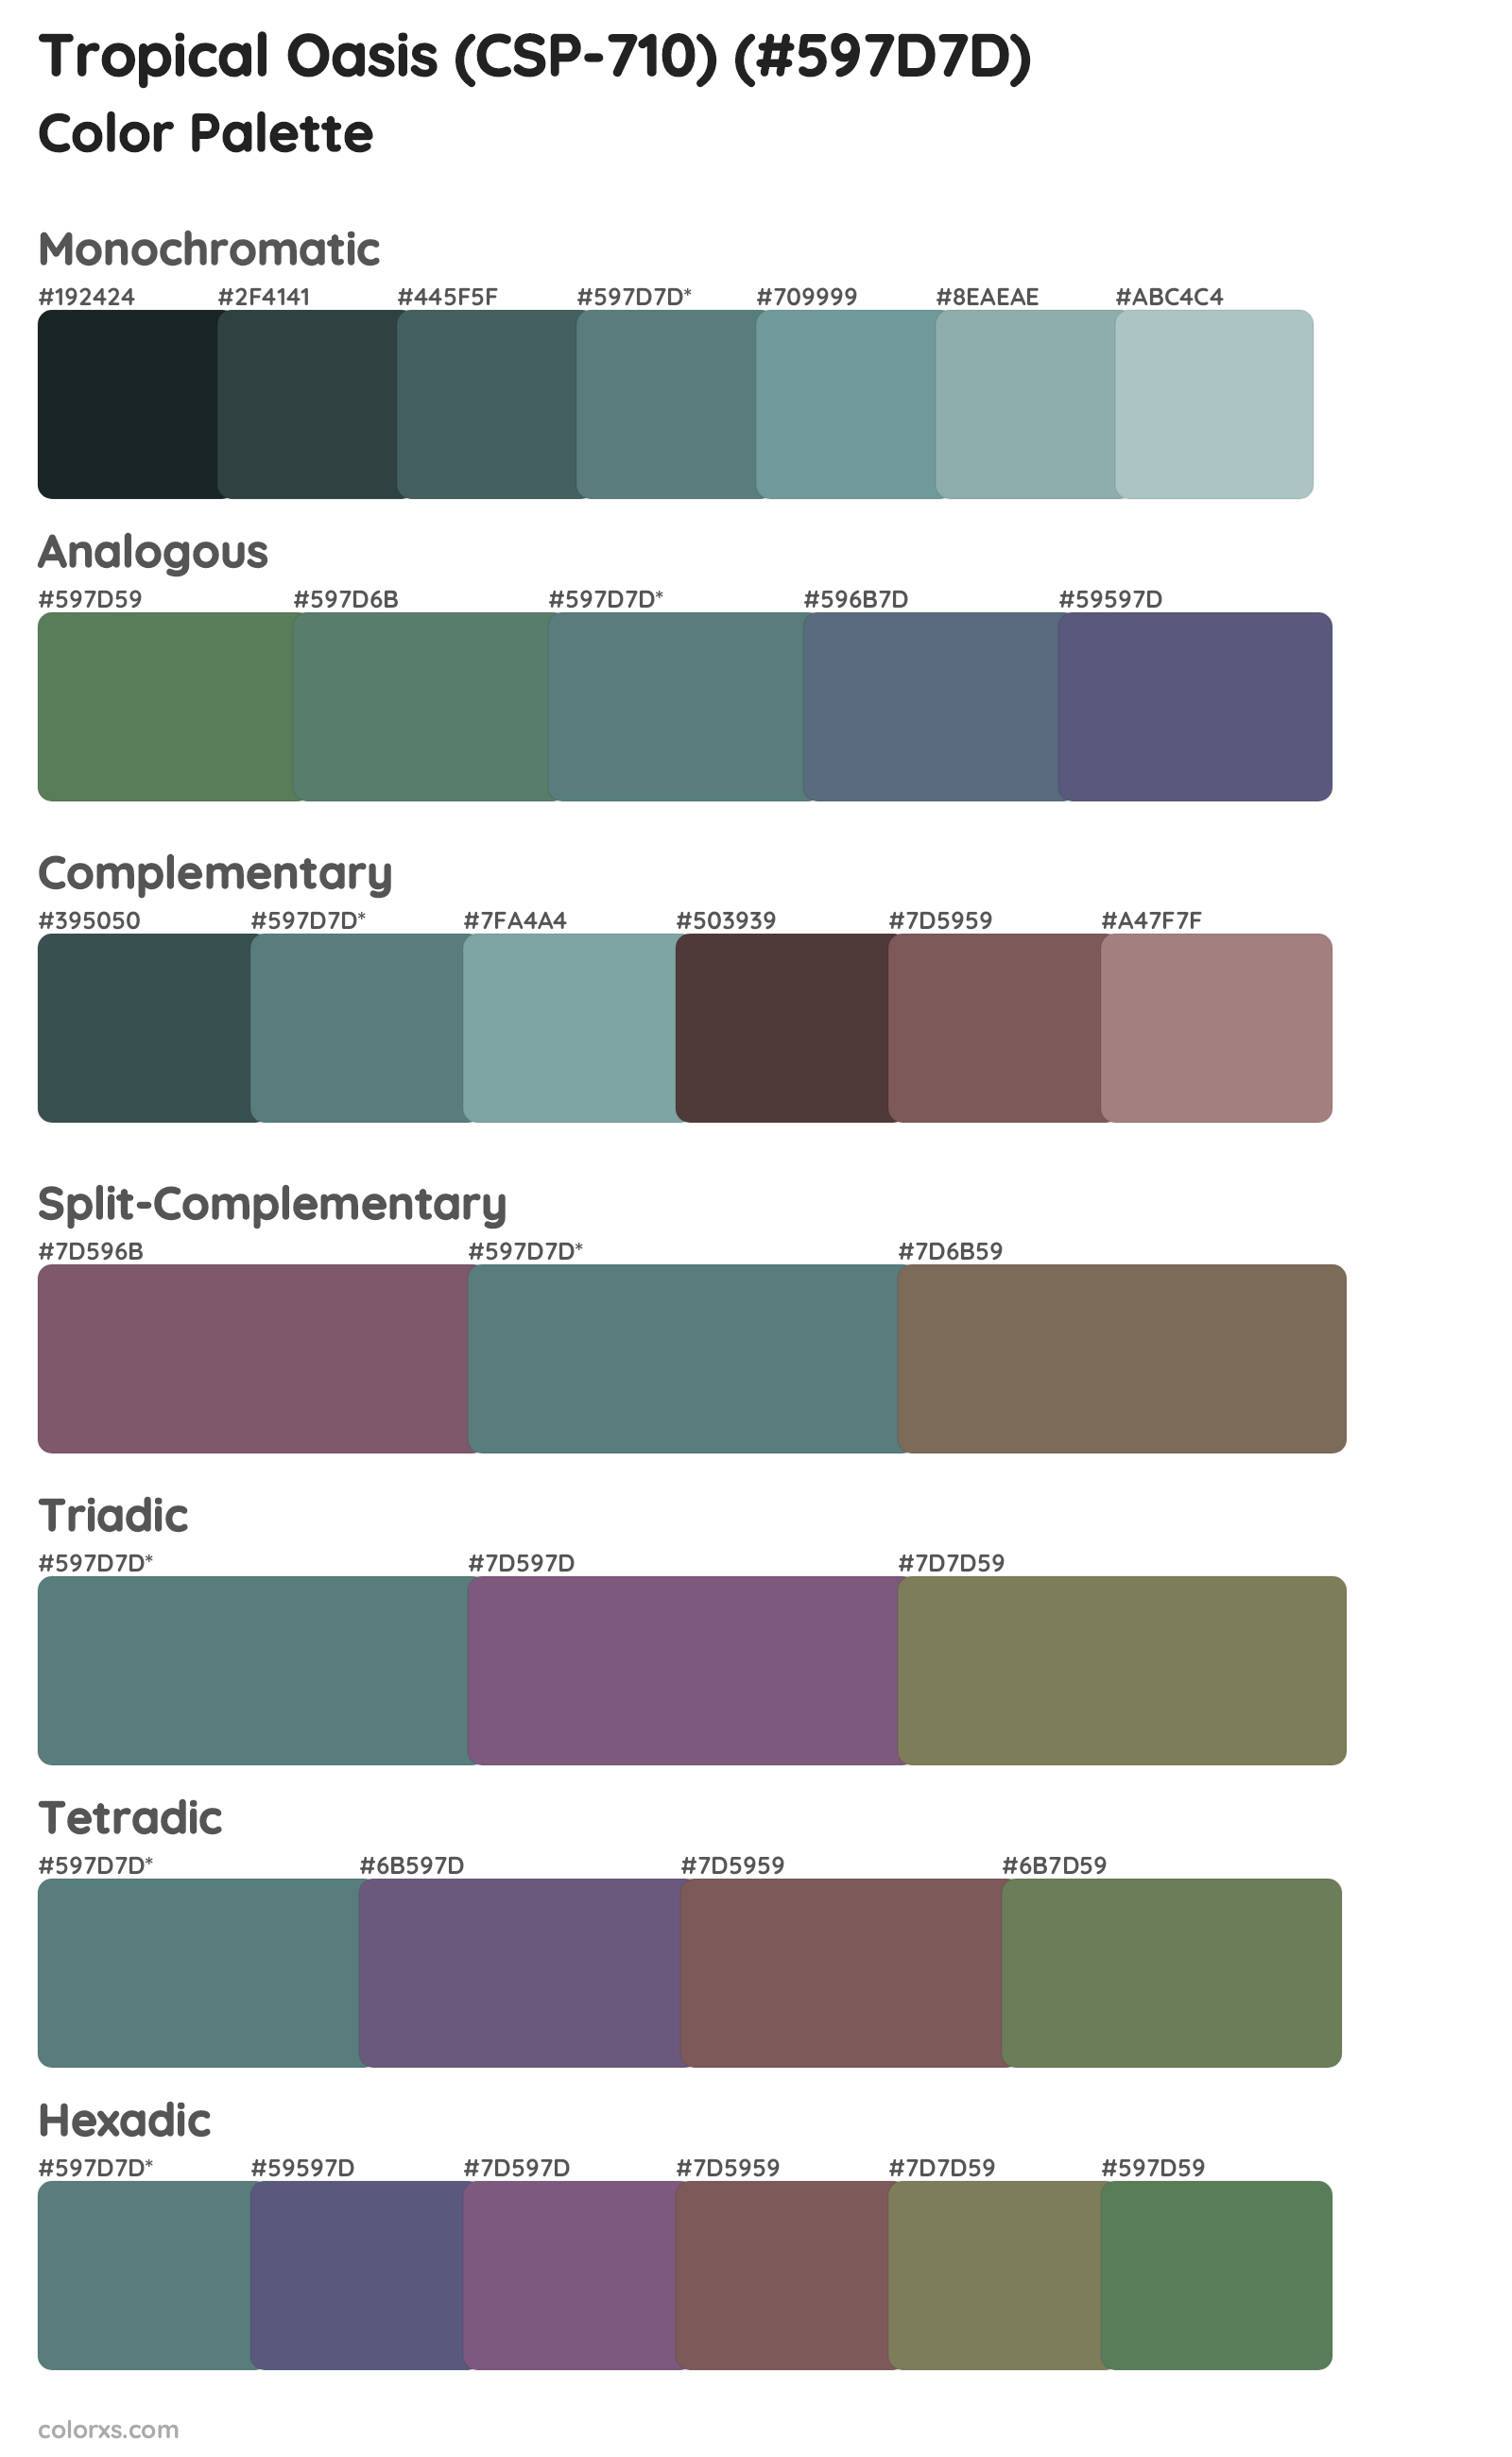 Tropical Oasis (CSP-710) Color Scheme Palettes